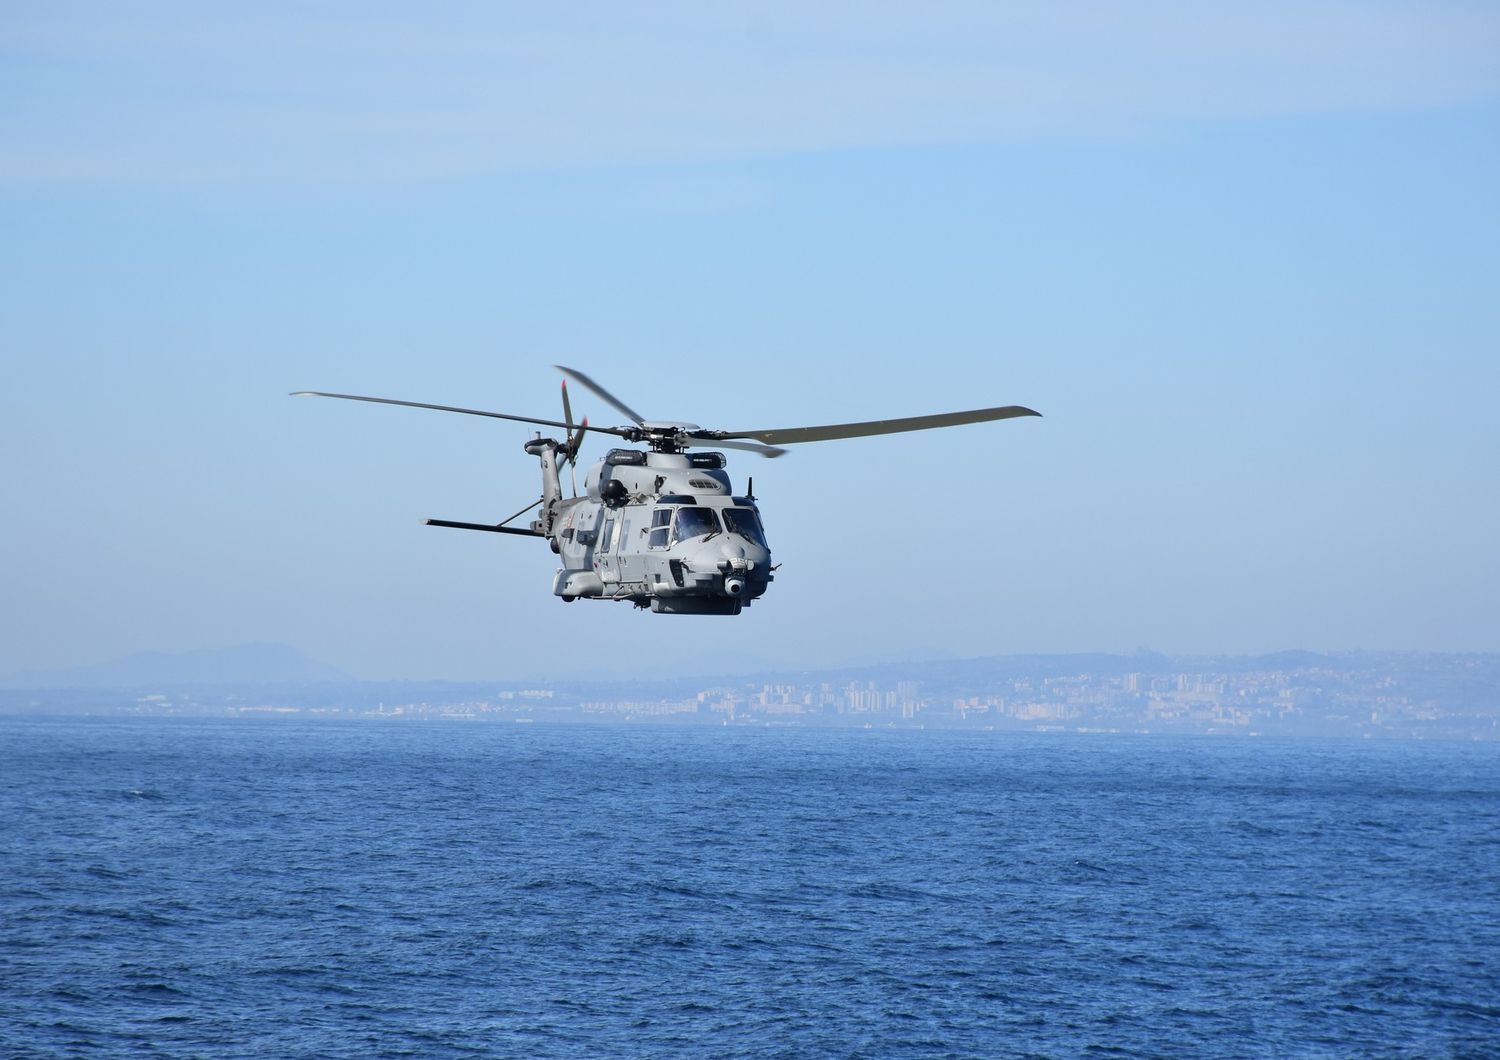 Grecia elicottero Nato disperso detriti mare